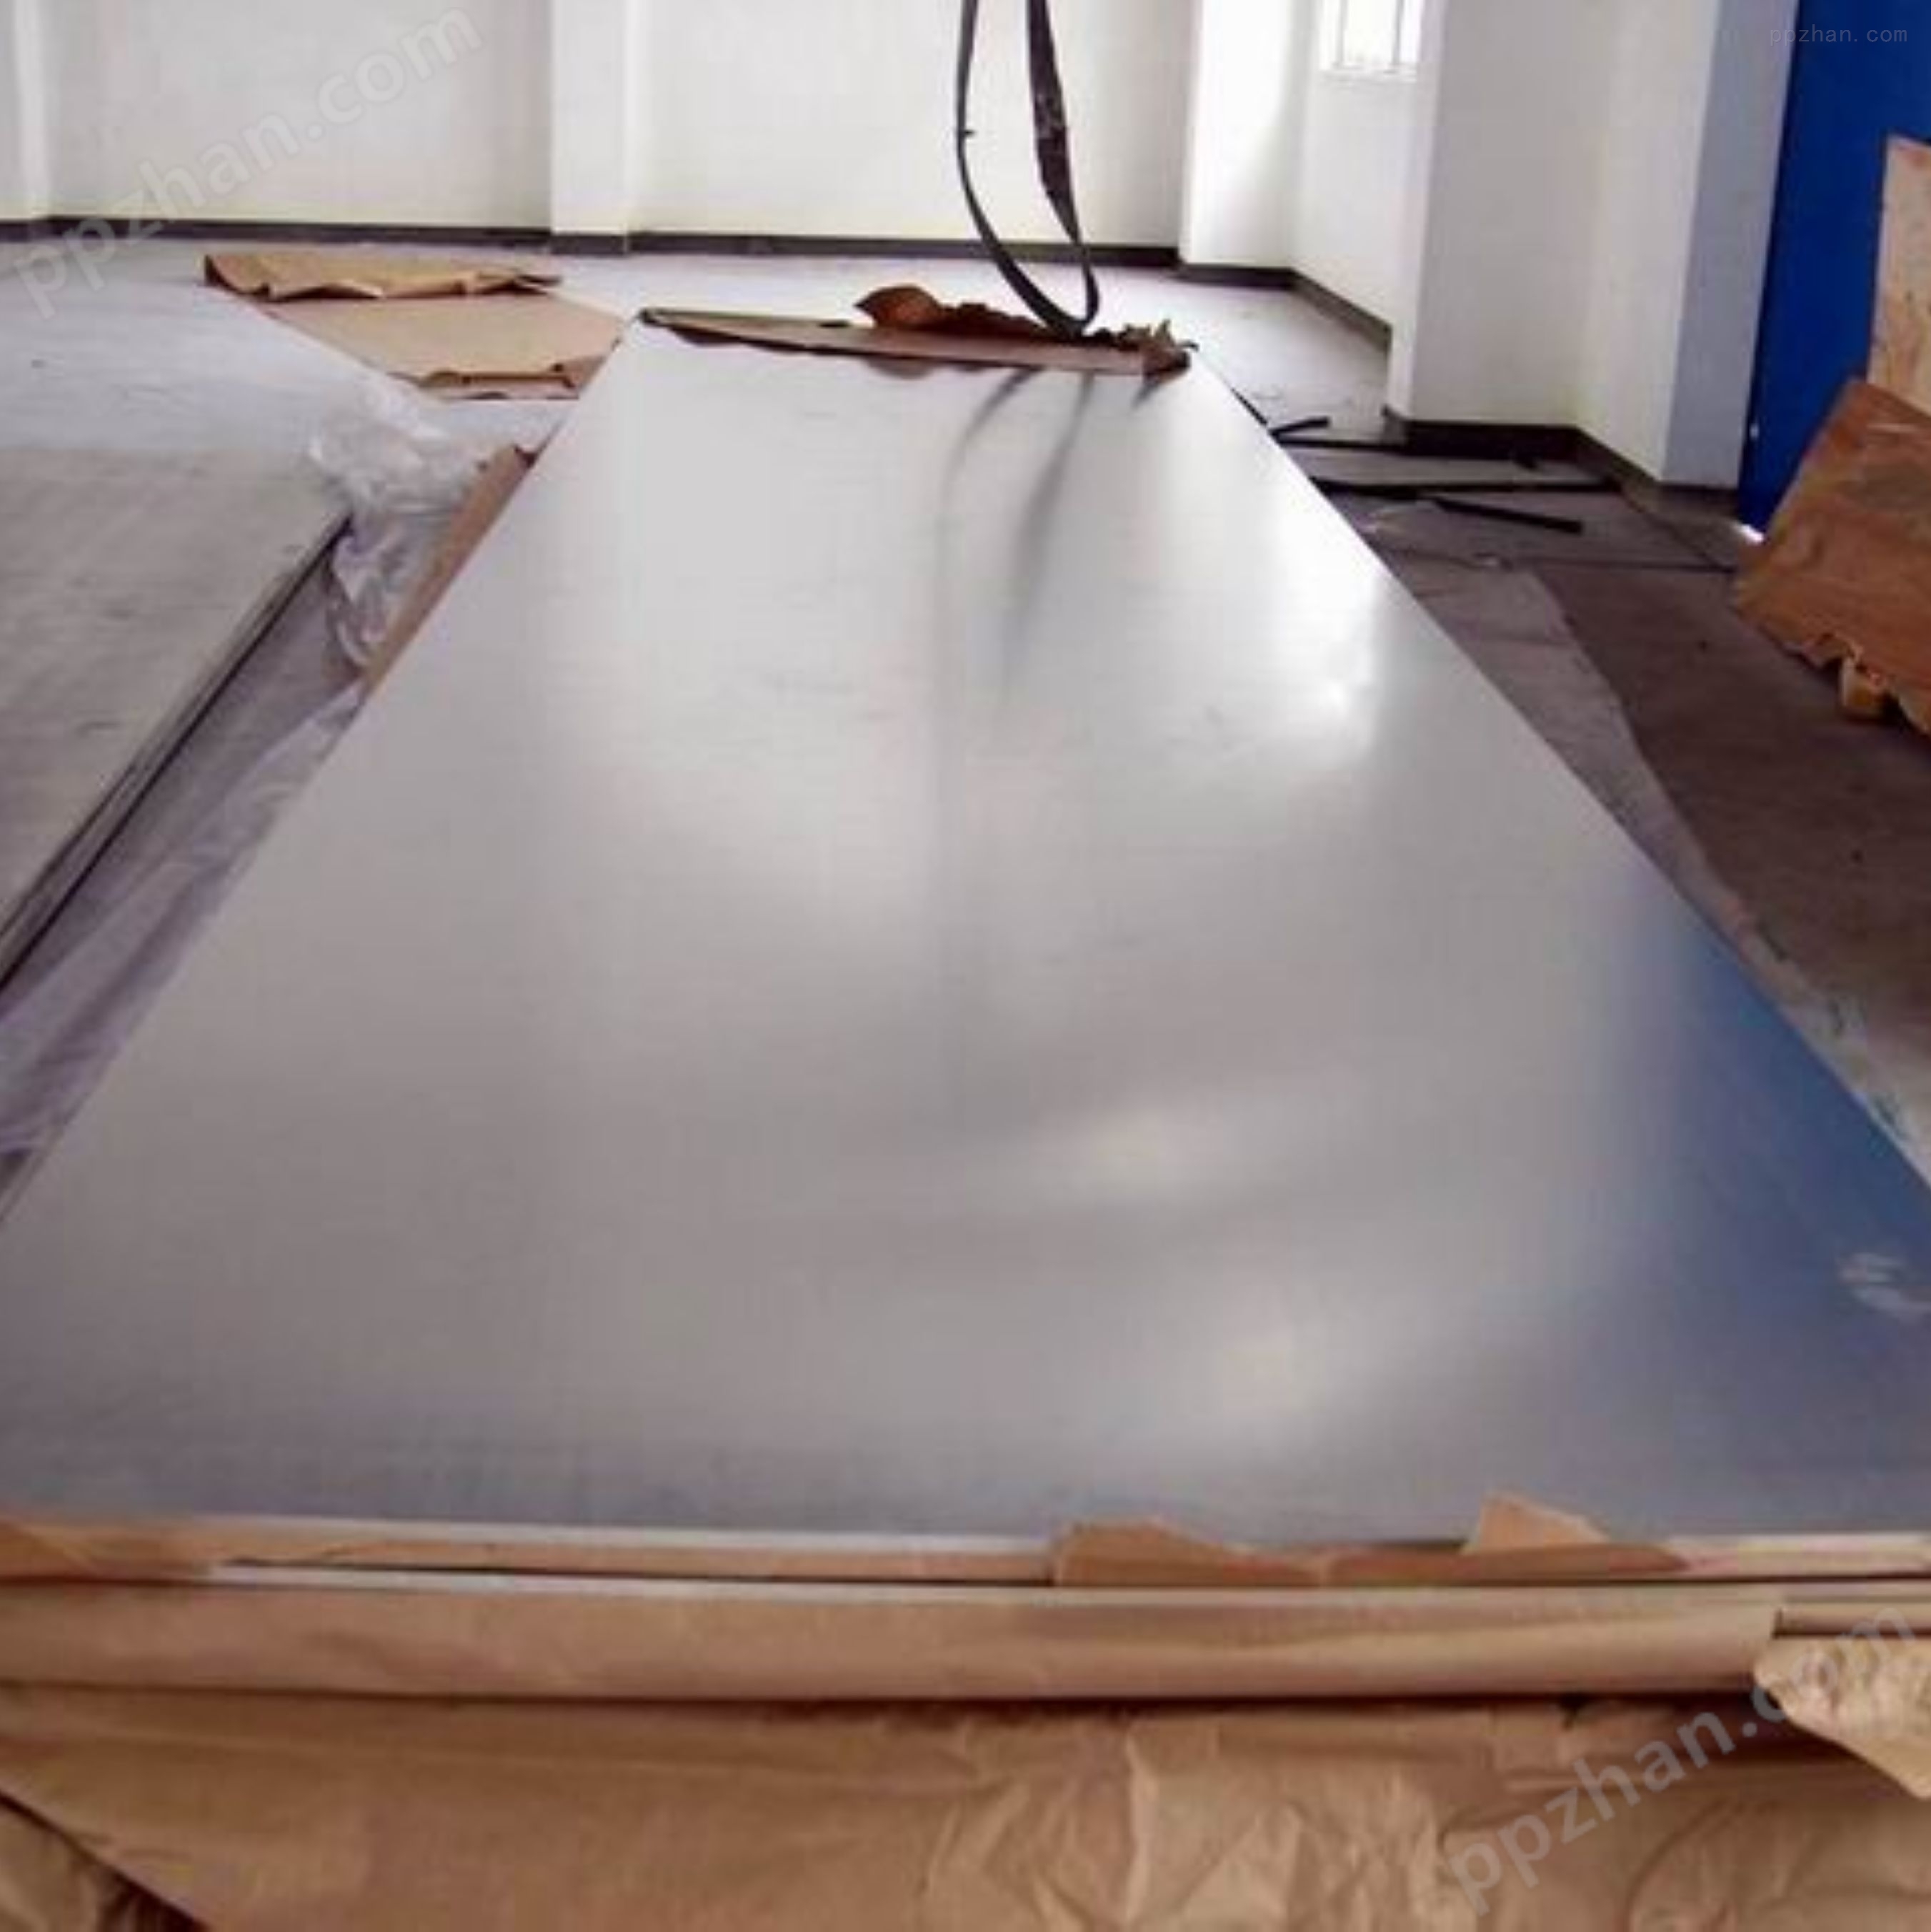 镜面铝板进口  西南铝板 美国铝板  5754铝合金板